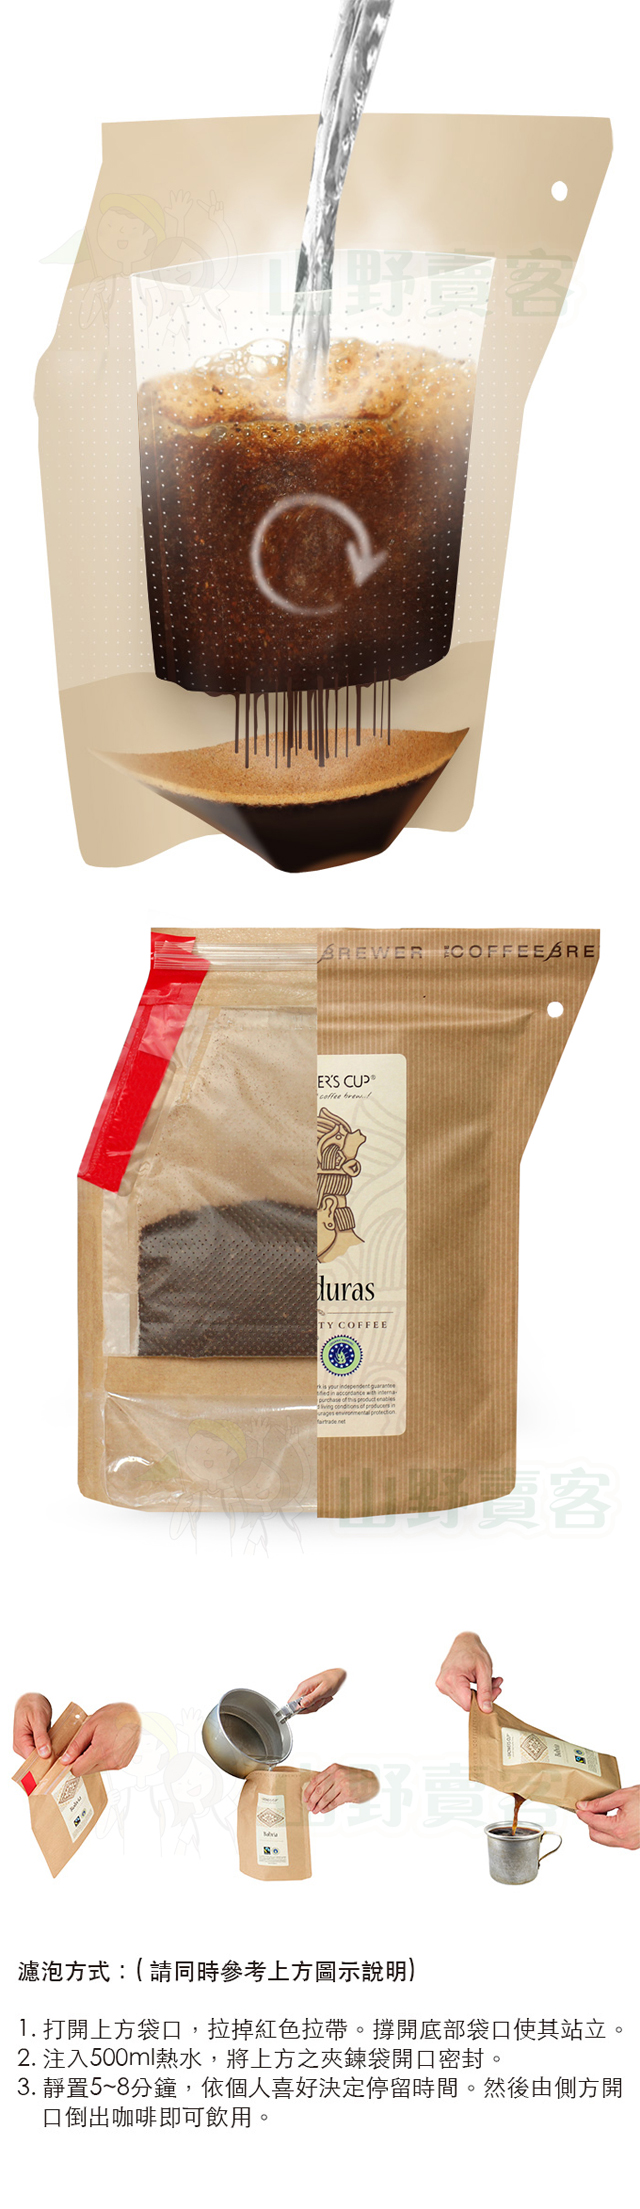 丹麥 Grower’s Cup 頂級有機攜帶式濾泡咖啡-宏都拉斯(Honduras) 研磨咖啡粉 GR03